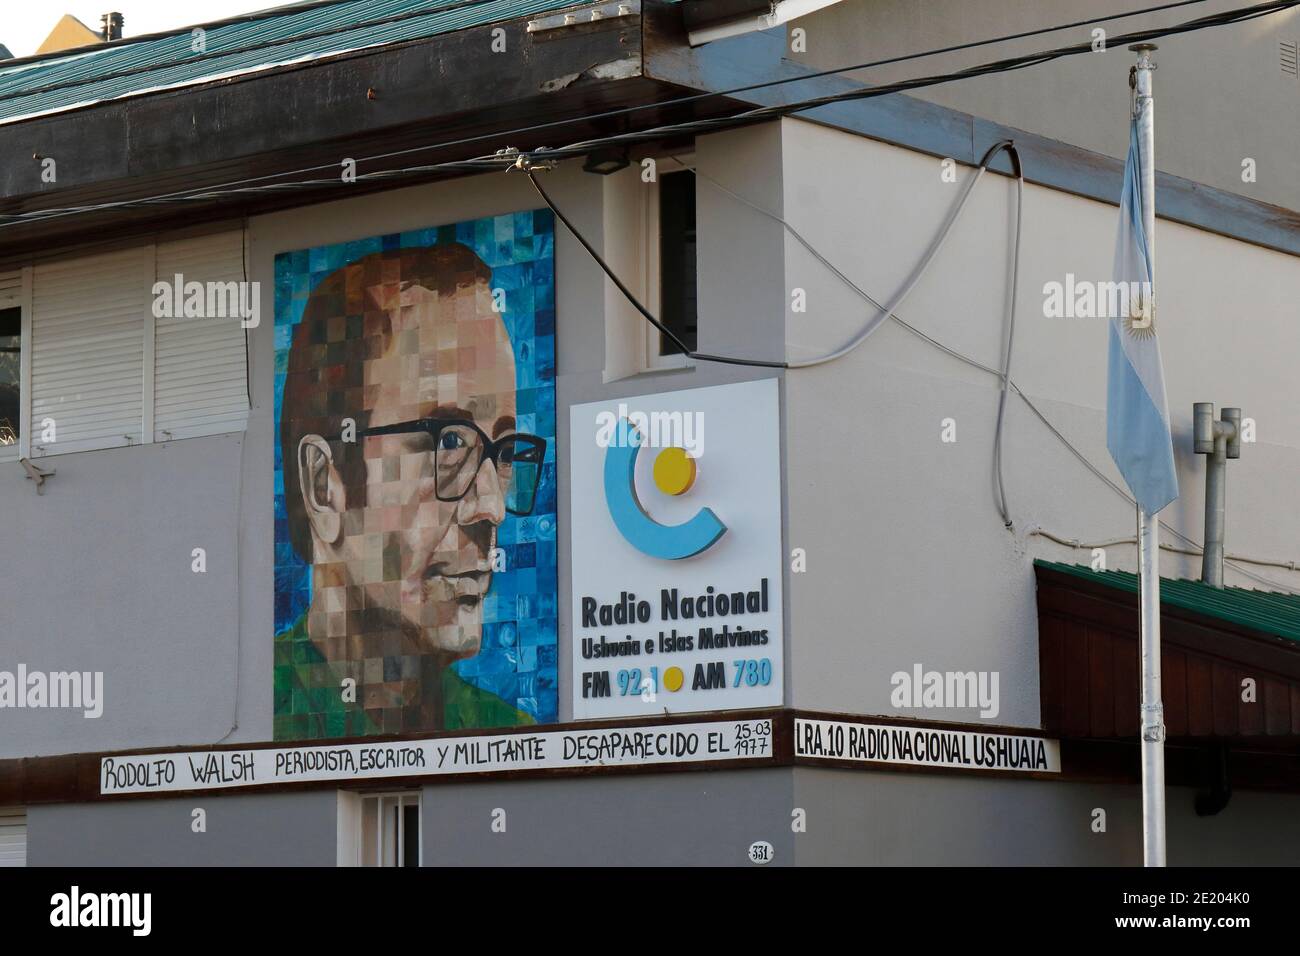 Bureau de poste d'Ushuaia - fresque à la mémoire de Rodolfo Walsh, l'un des 'dissola' - photographié le 29 novembre 2015 Argentine Banque D'Images